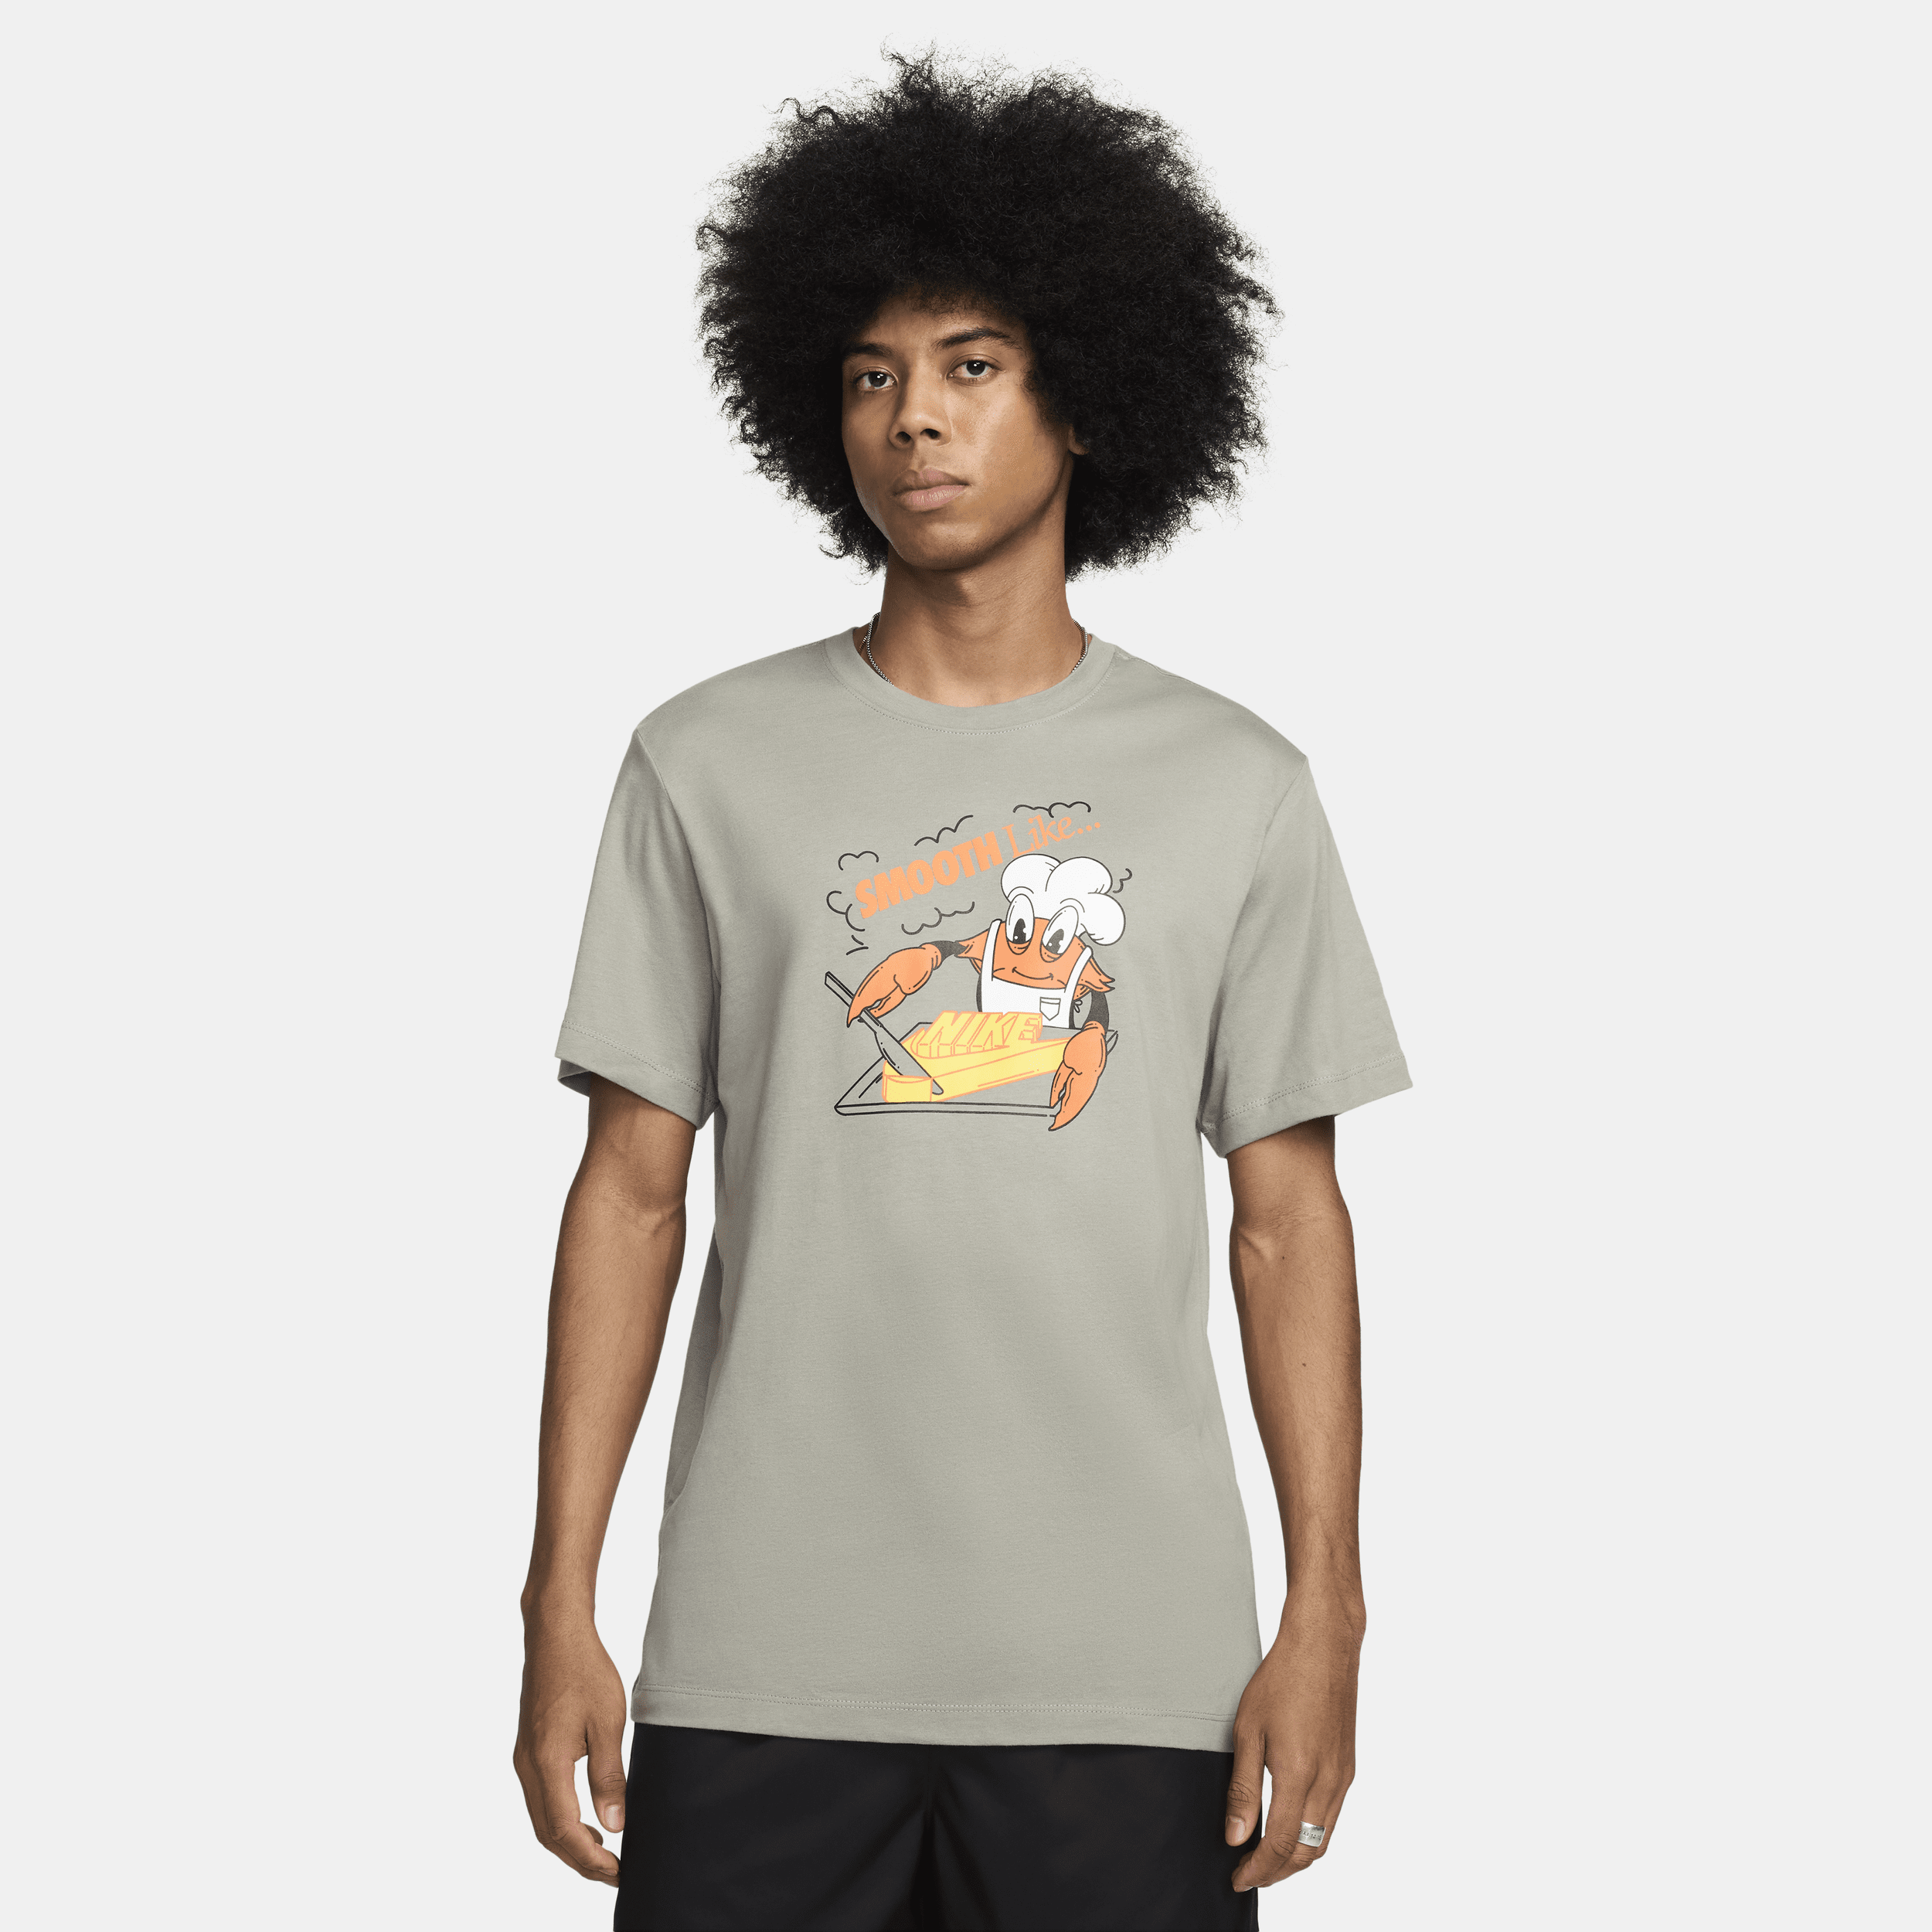 Nike Sportswear T-shirt voor heren Grijs